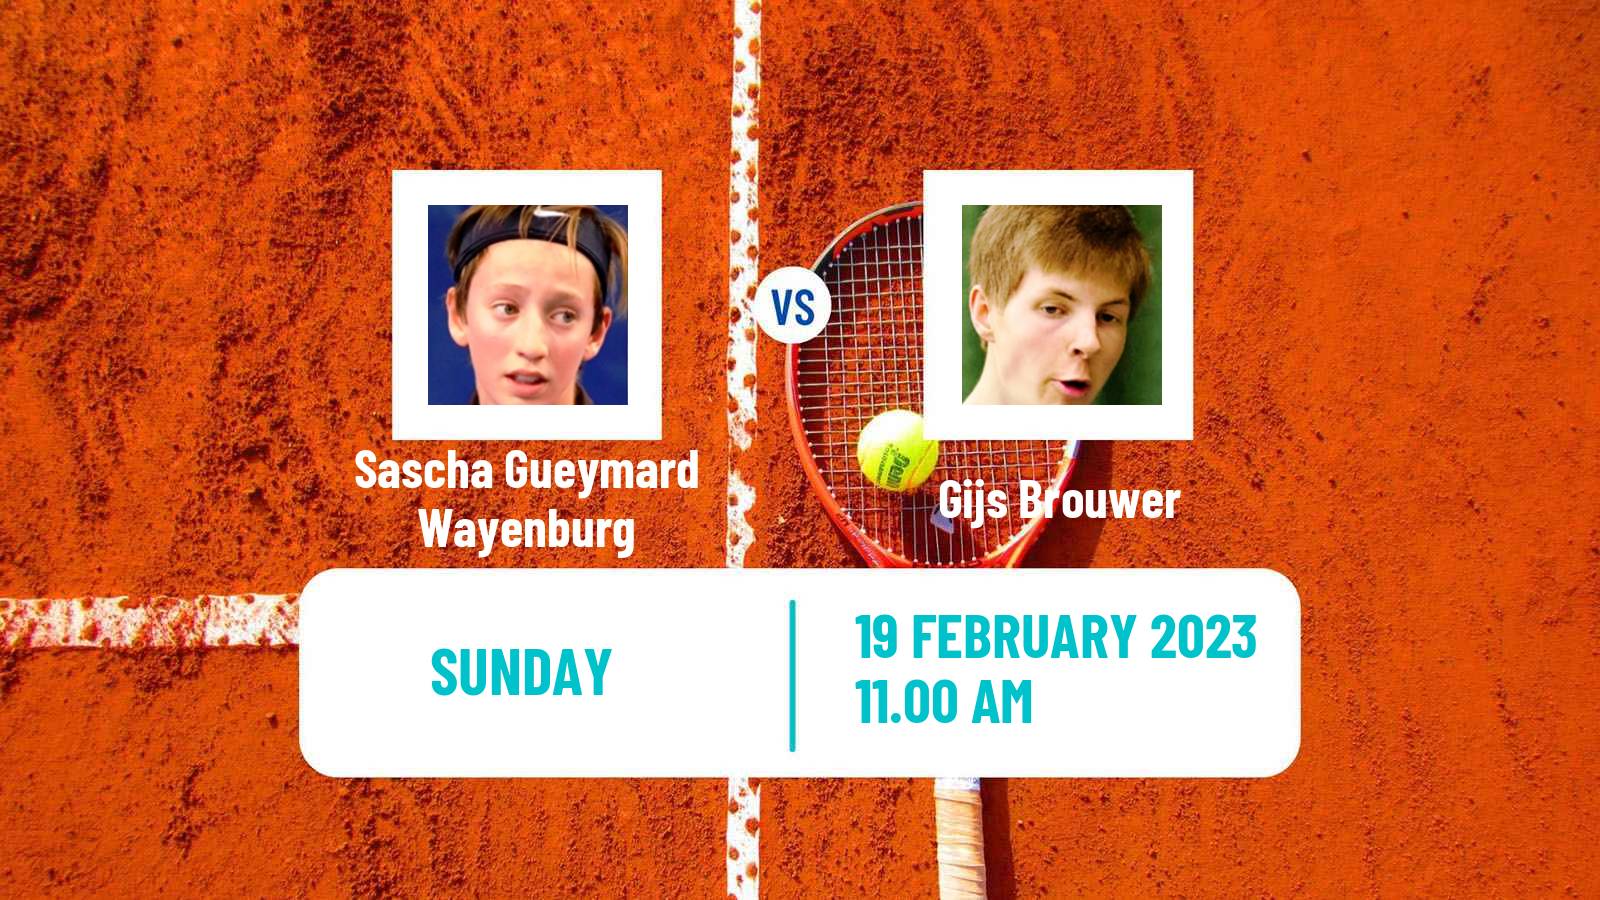 Tennis ATP Marseille Sascha Gueymard Wayenburg - Gijs Brouwer